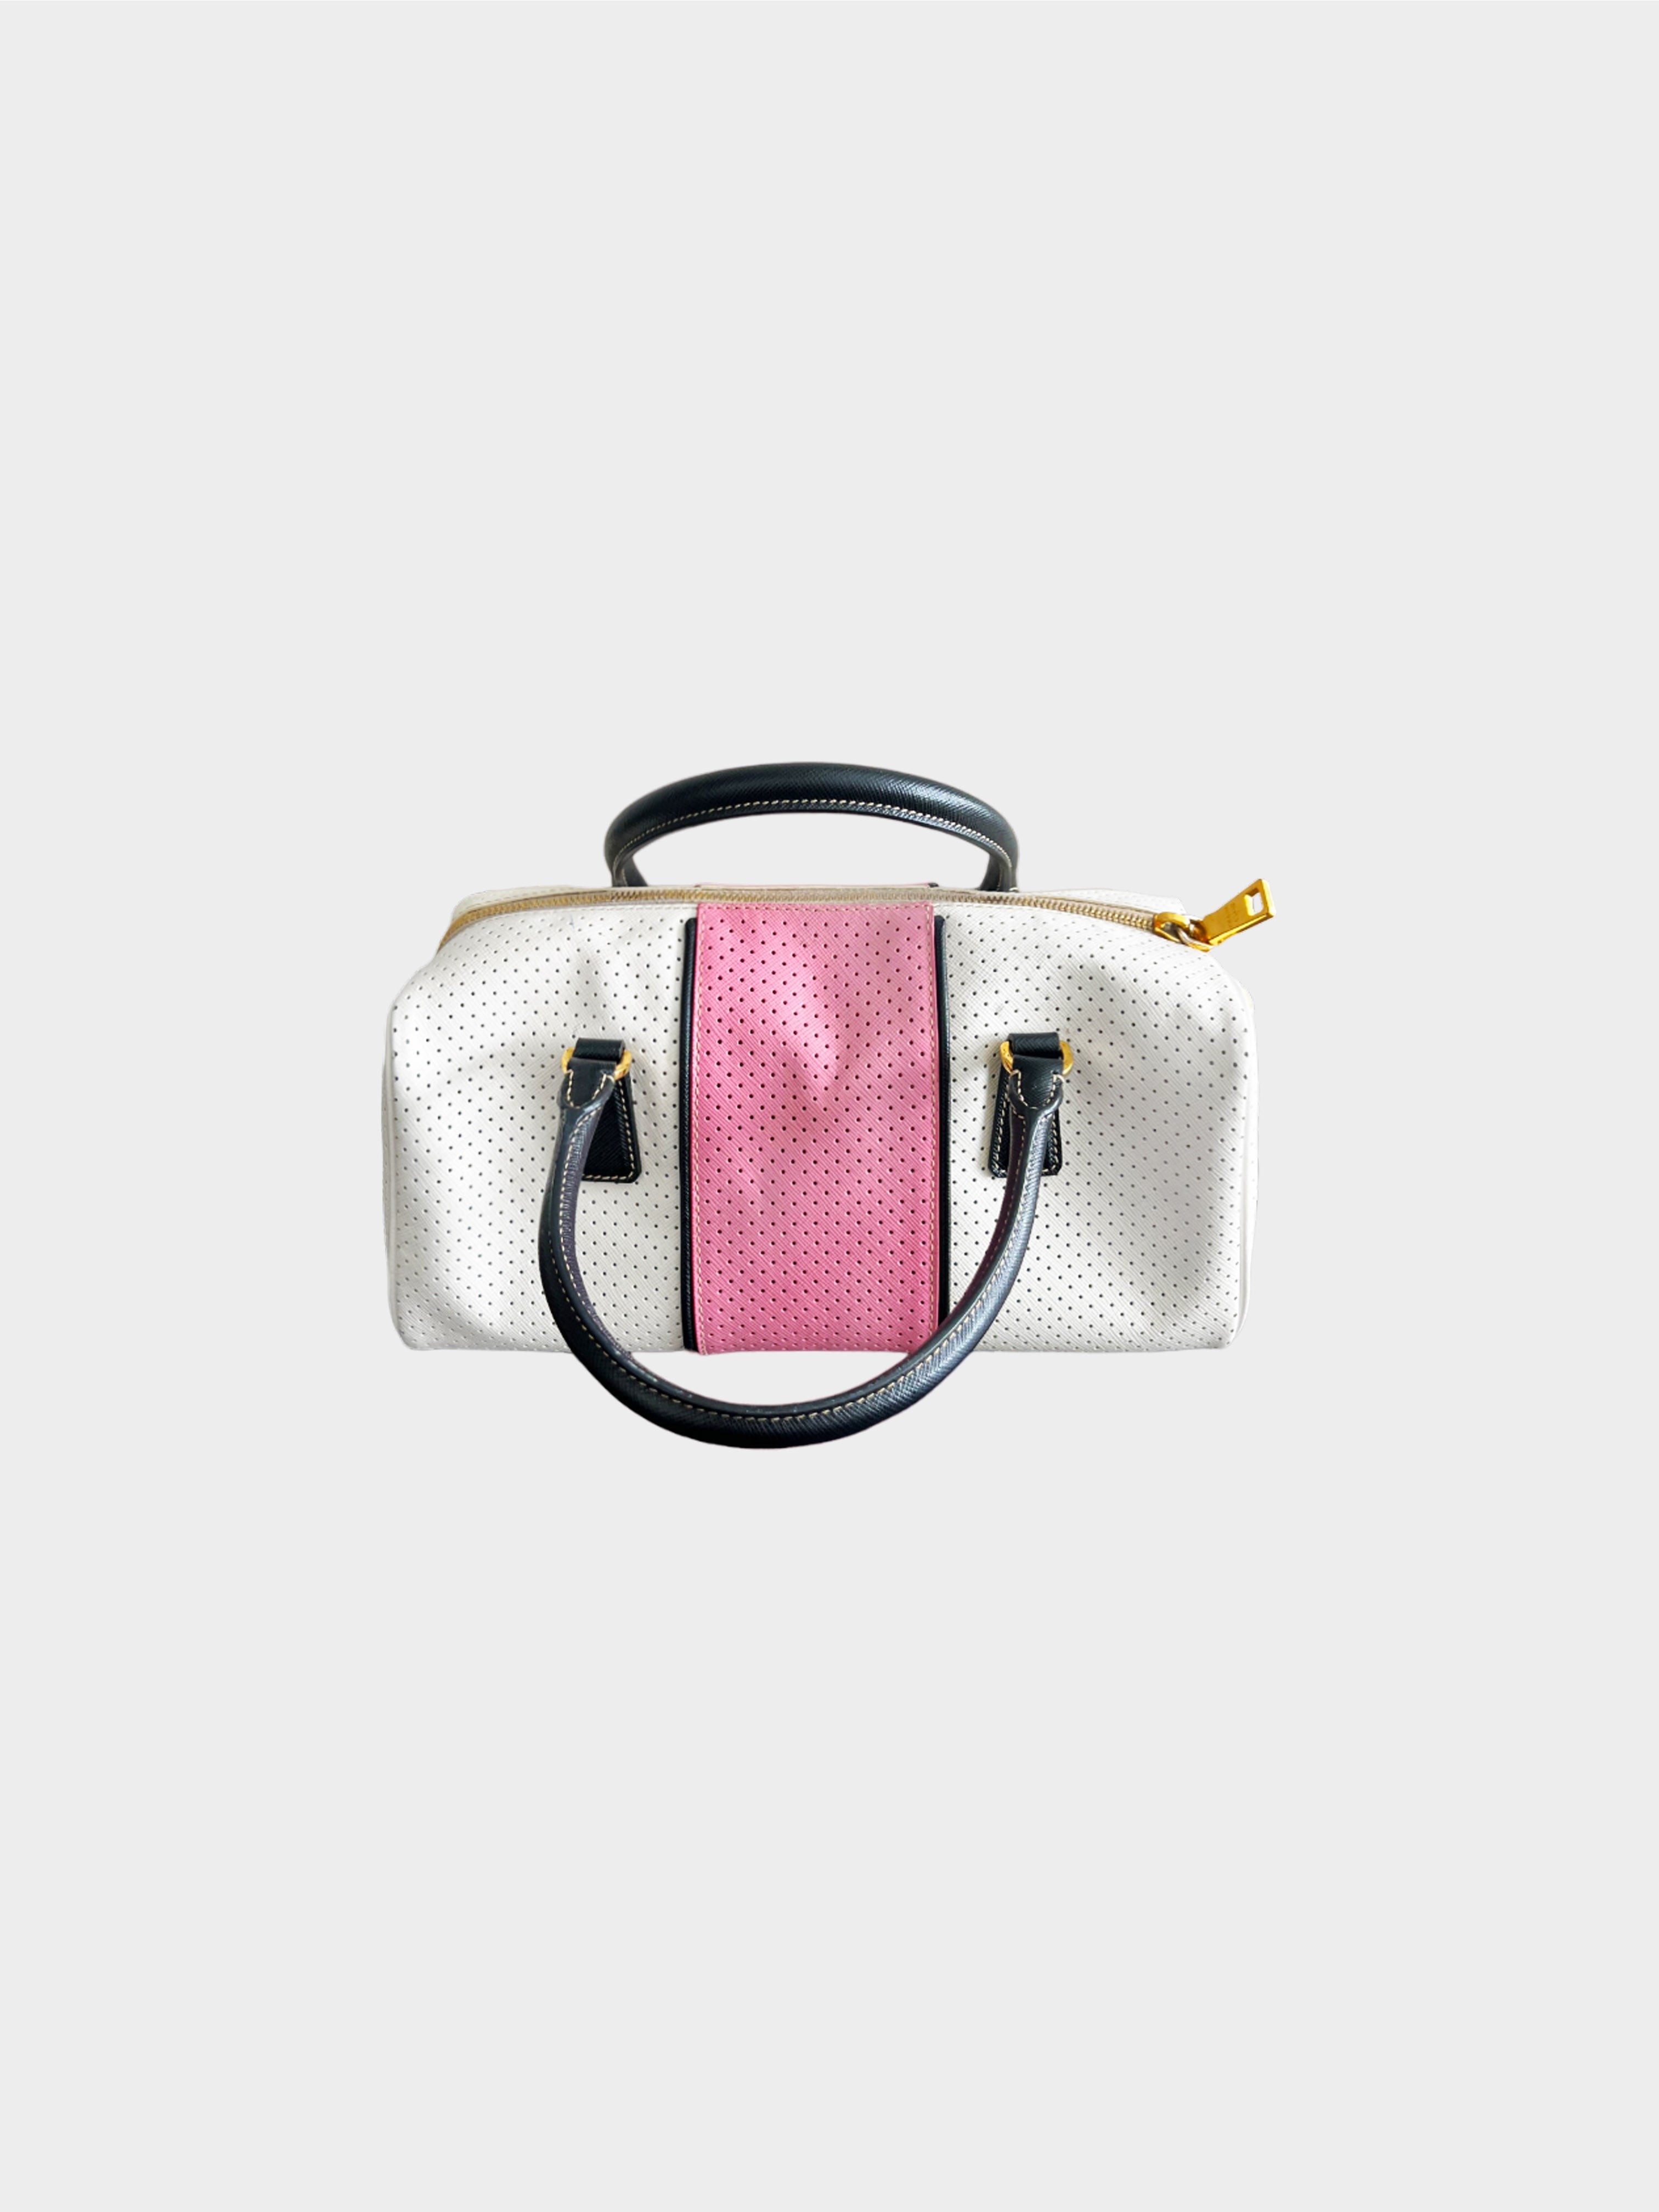 Prada 2010s White Saffiano Perforated Striped Shoulder Bag